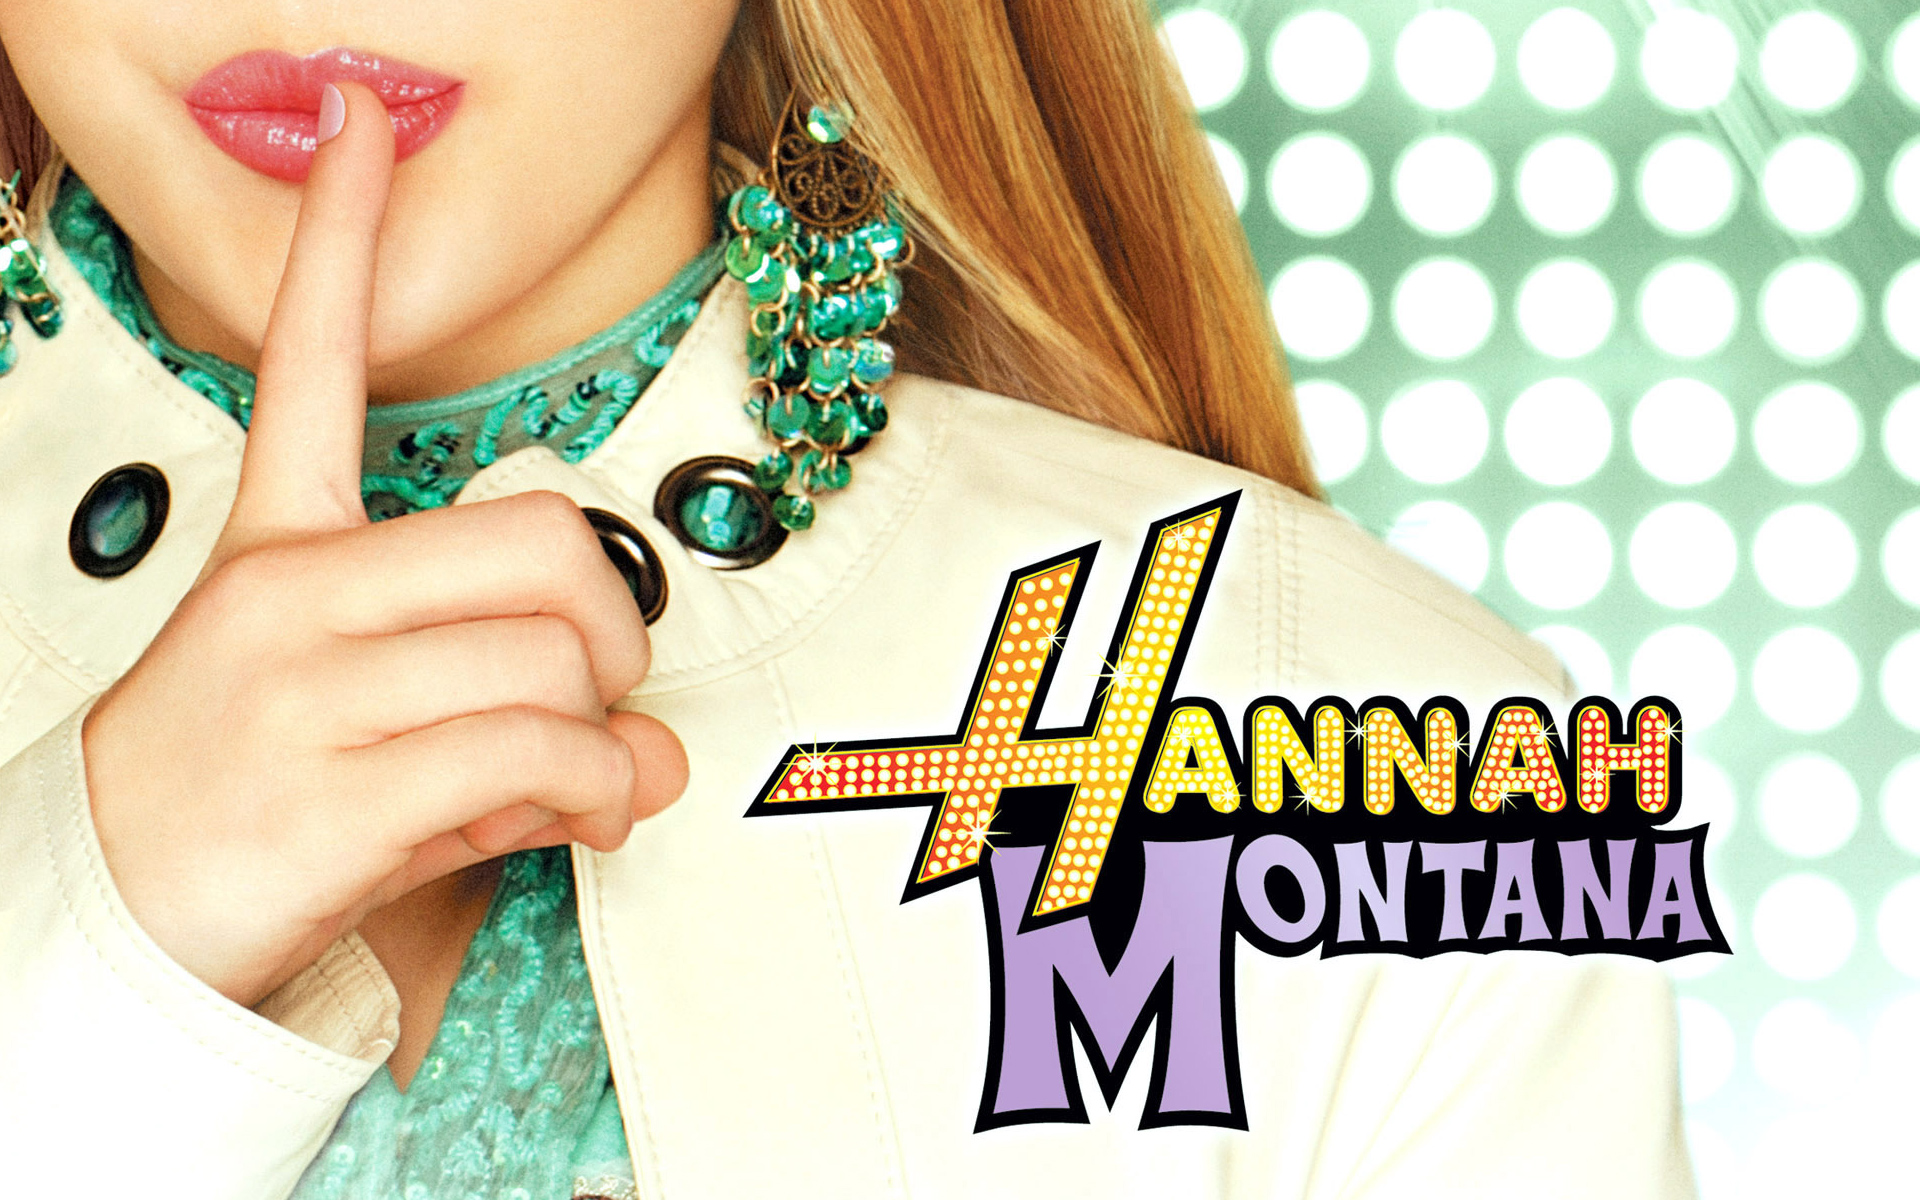  Hannah Montana   Best of Both Girls Wallpaper 28306965  Fanpop